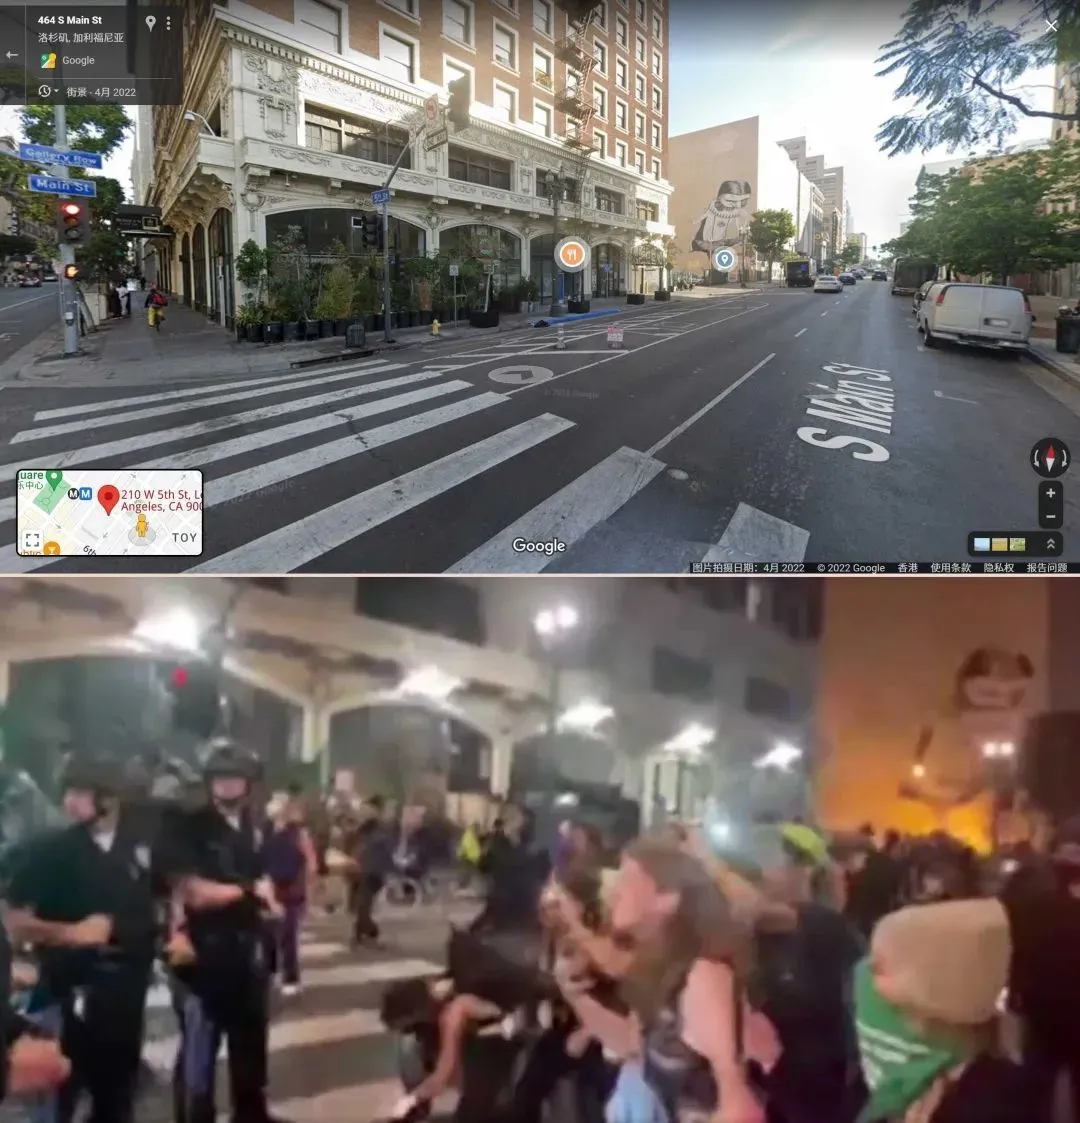 谷歌街景与视频内容比对，可见楼外形与远处的墙绘一样。  